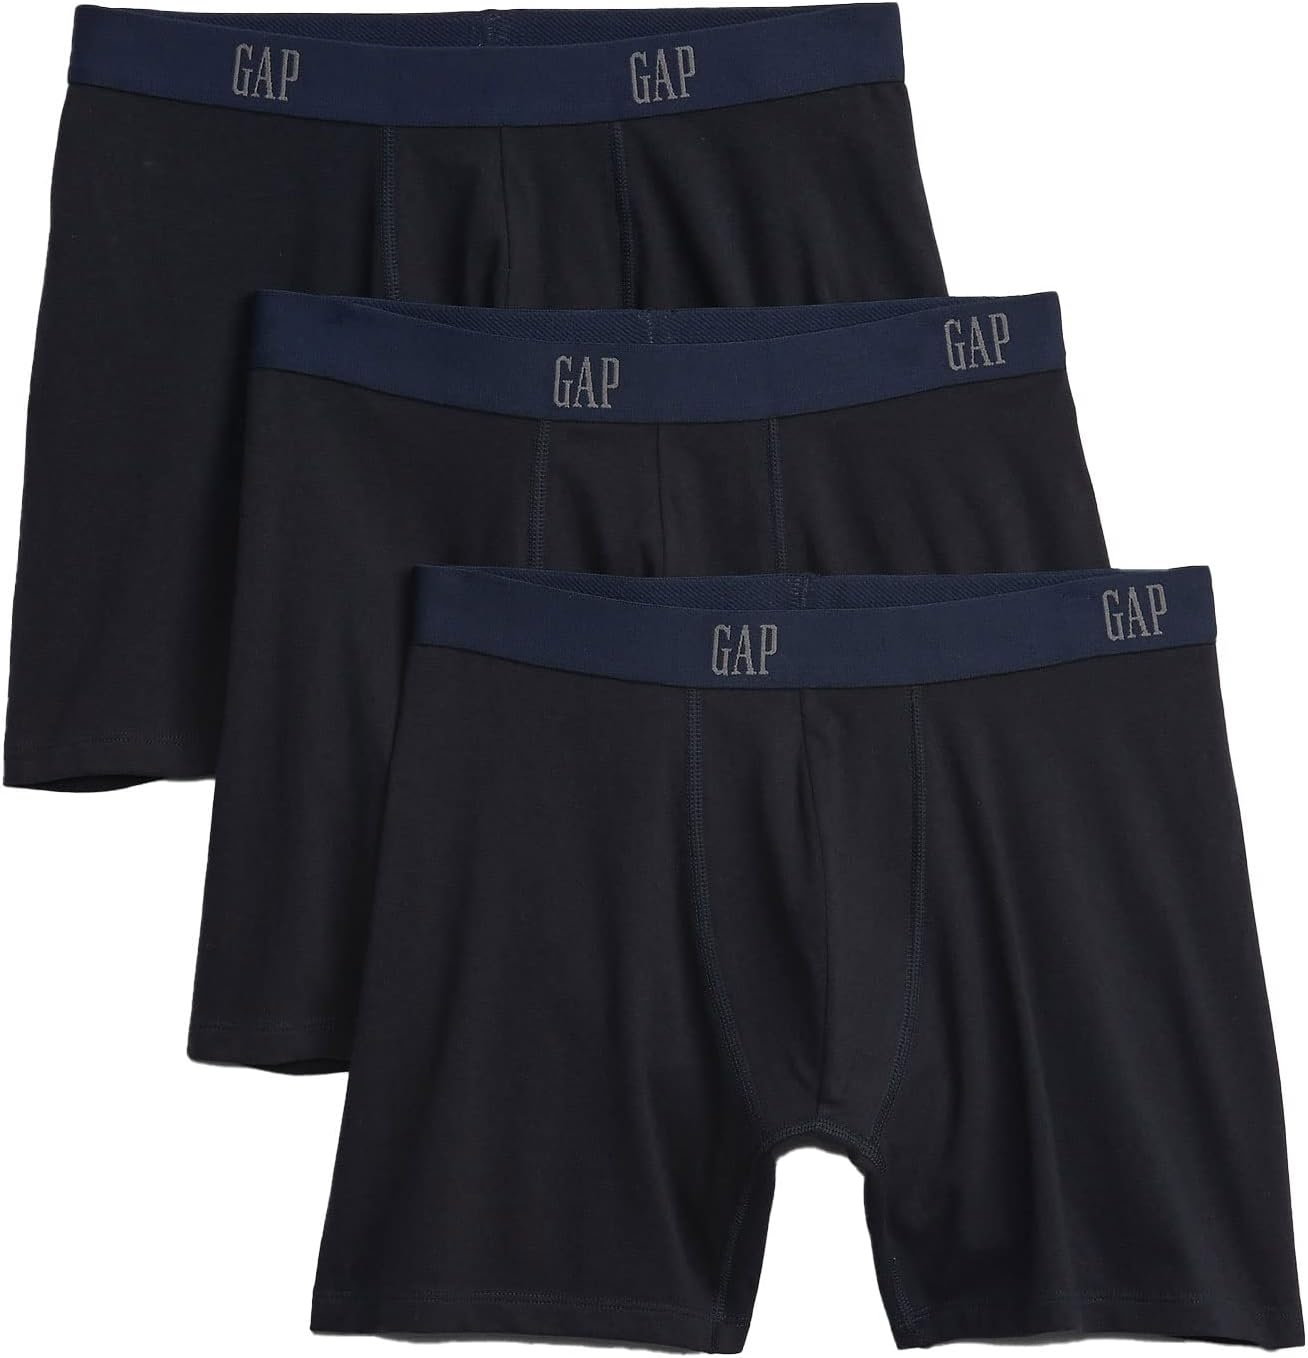 Men's Boxers Gap Underwear